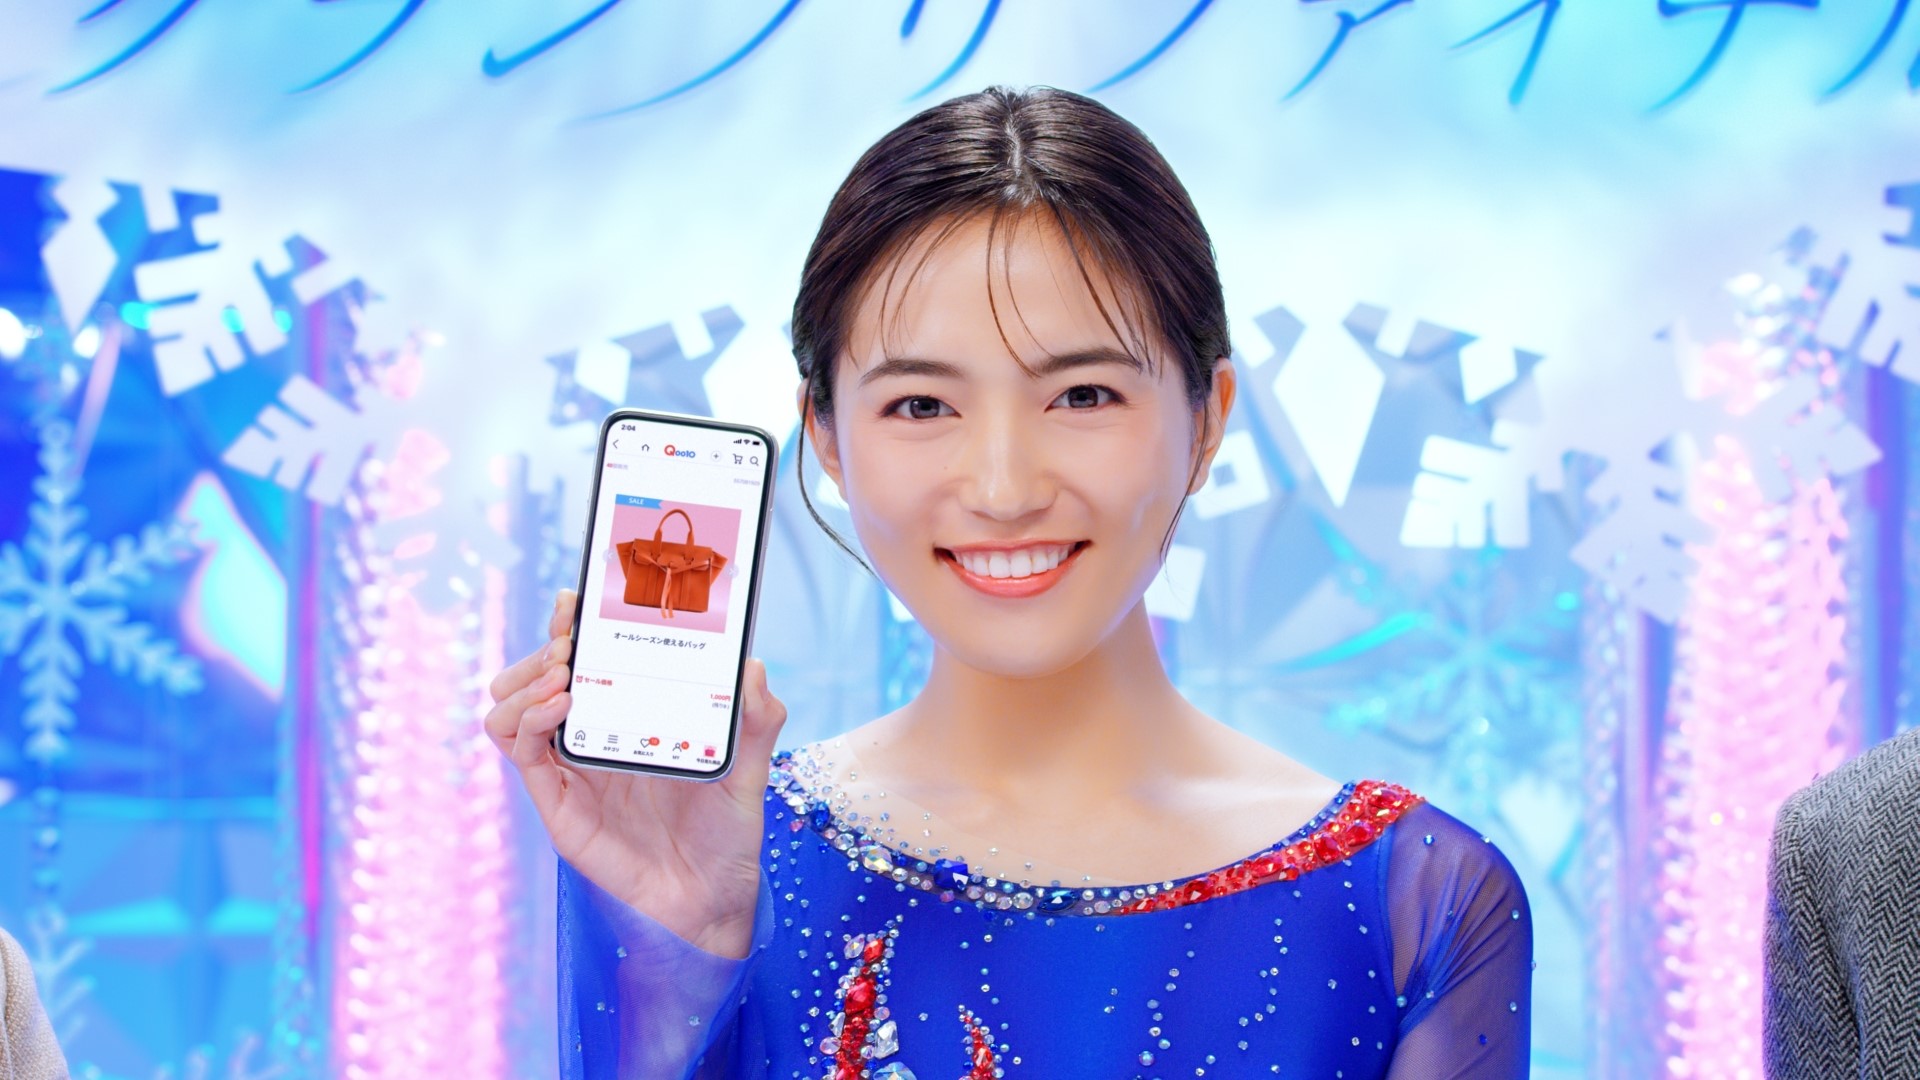 川口春奈がフィギュアスケート選手に Qoo10 新動画公開 Ebay Japan合同会社のプレスリリース